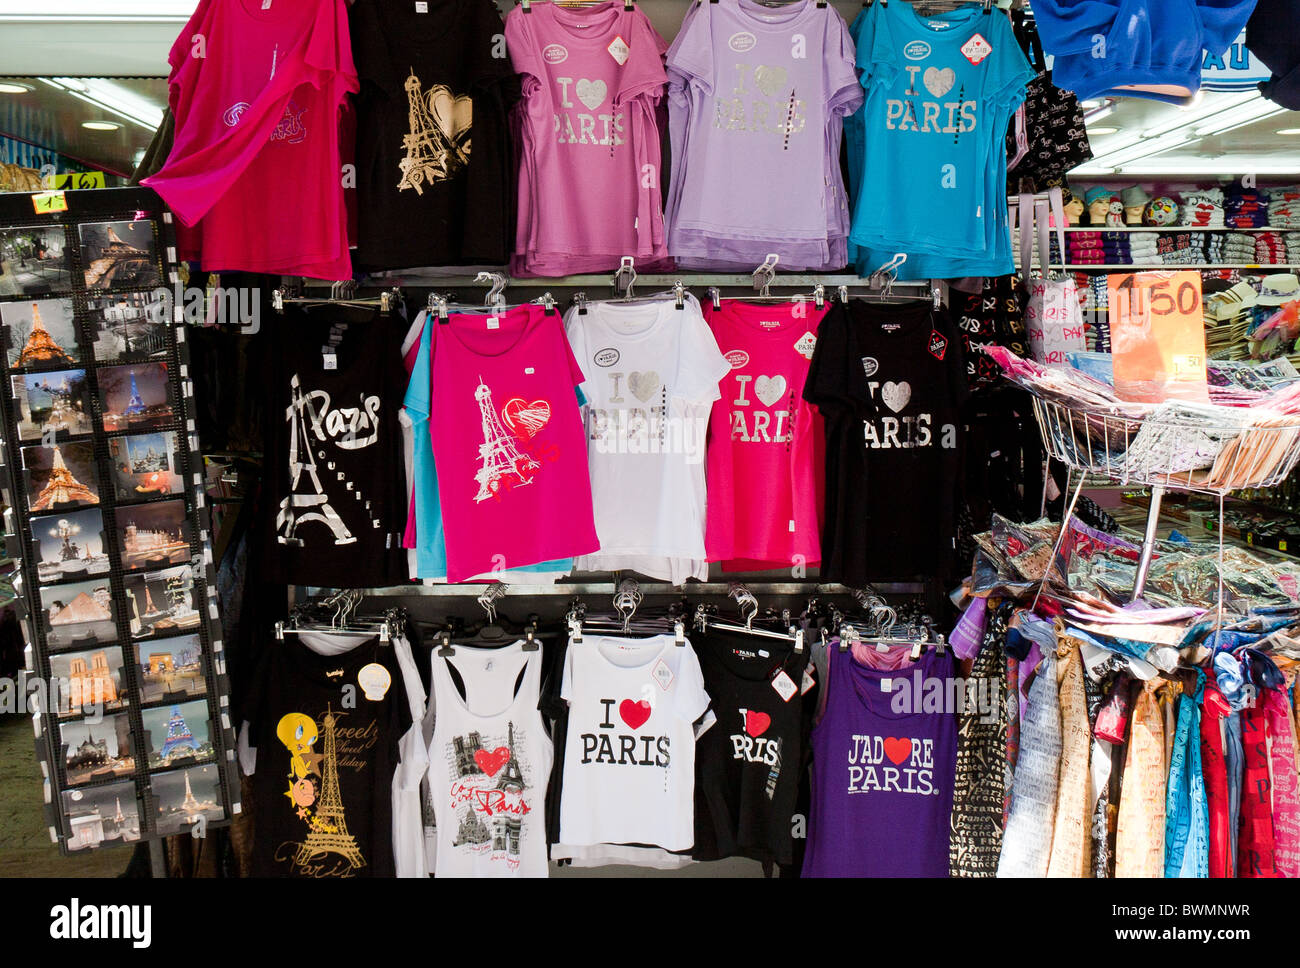 Paris T shirts in souvenir shop near Basilique du Sacre Coeur, Paris Stock Photo